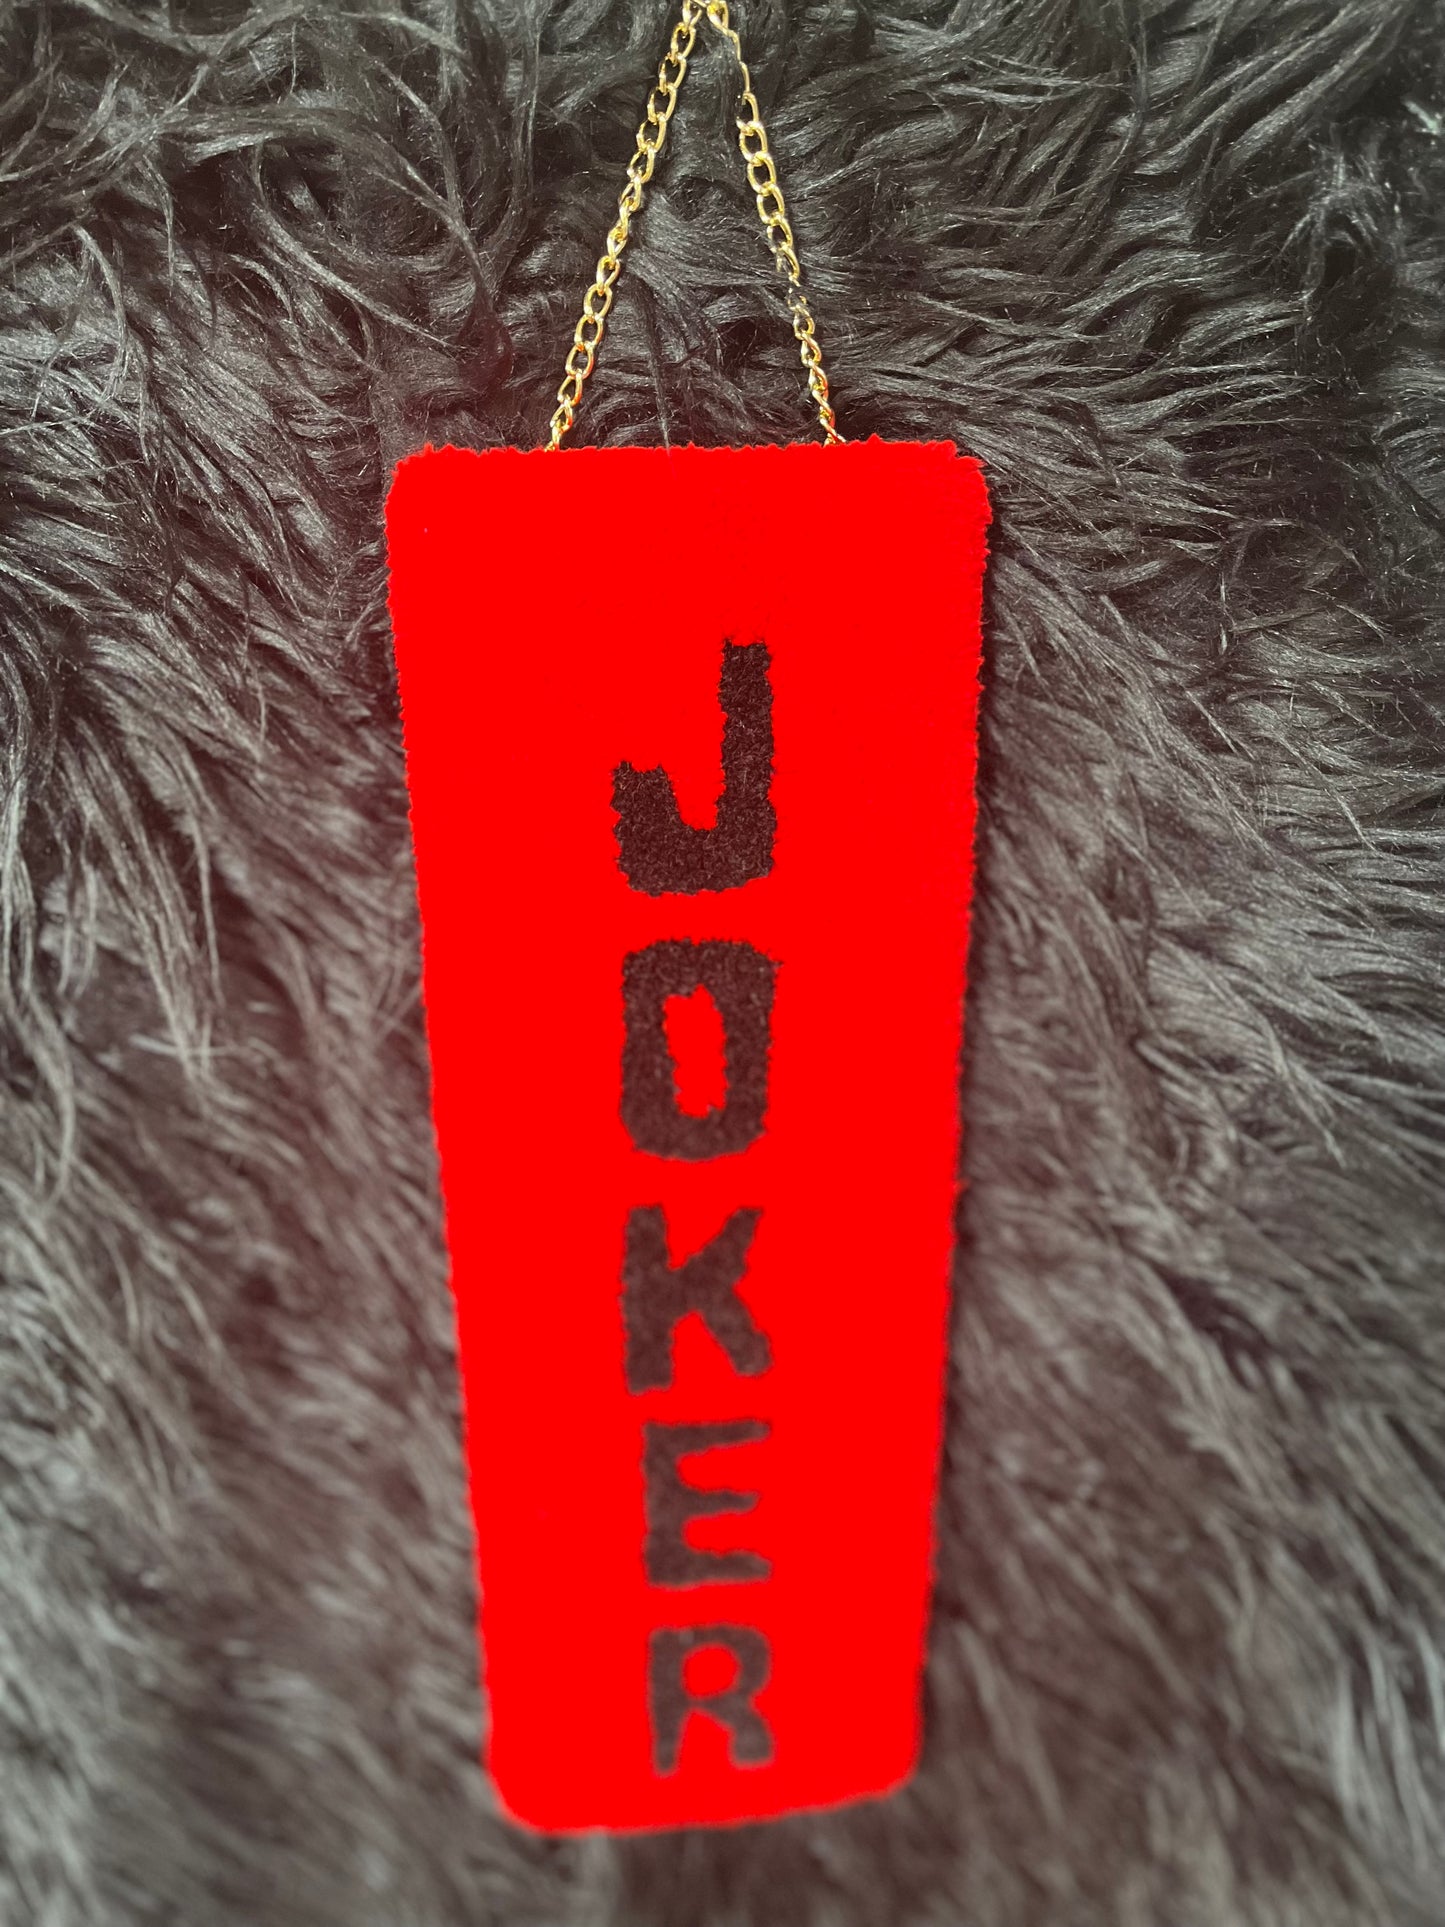 “The Joker” Rug Banner